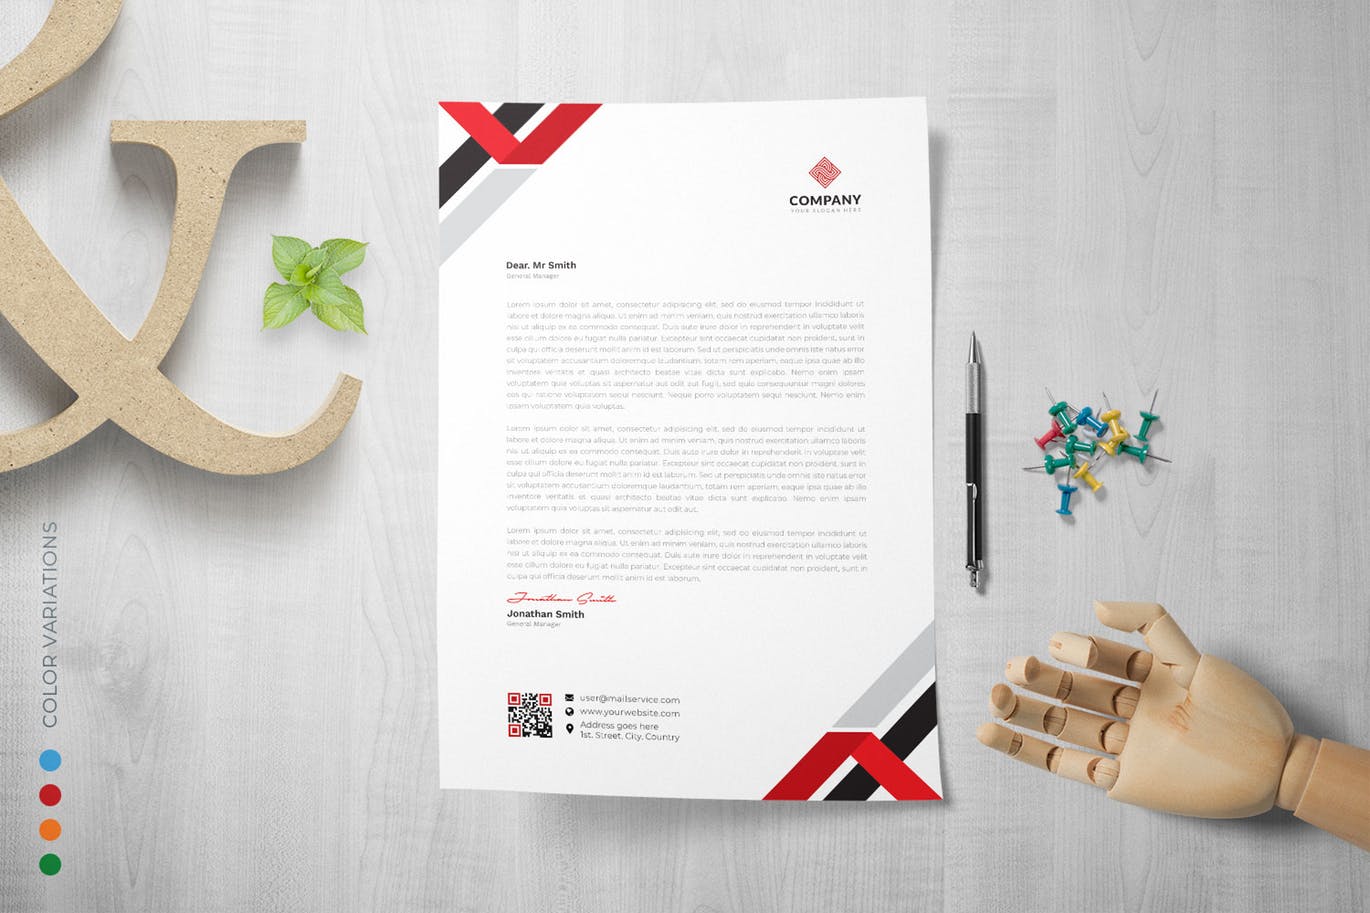 三色搭配企业信纸排版设计模板 Letterhead插图